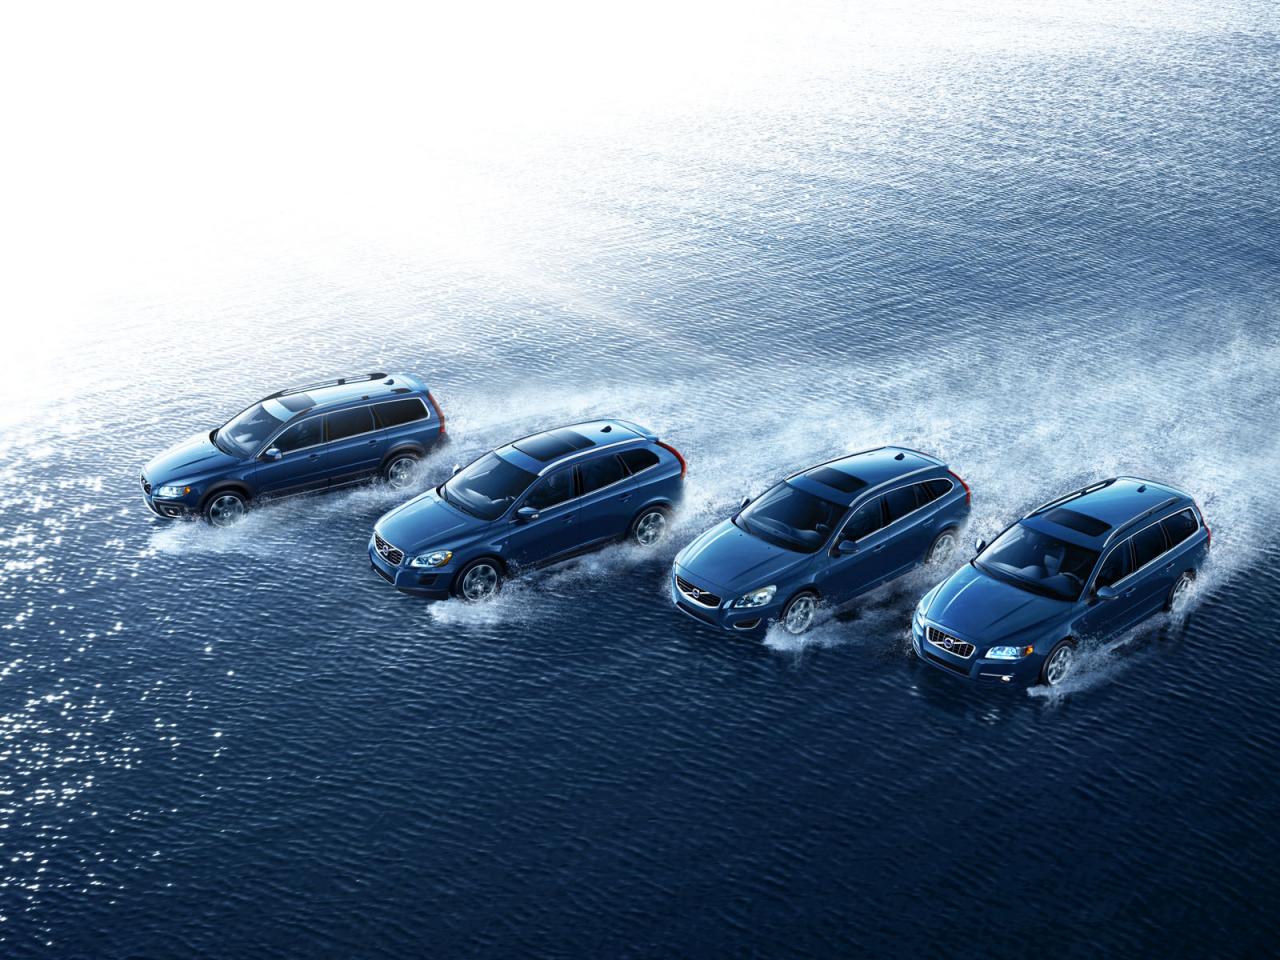 Volvo Ocean Race special edition